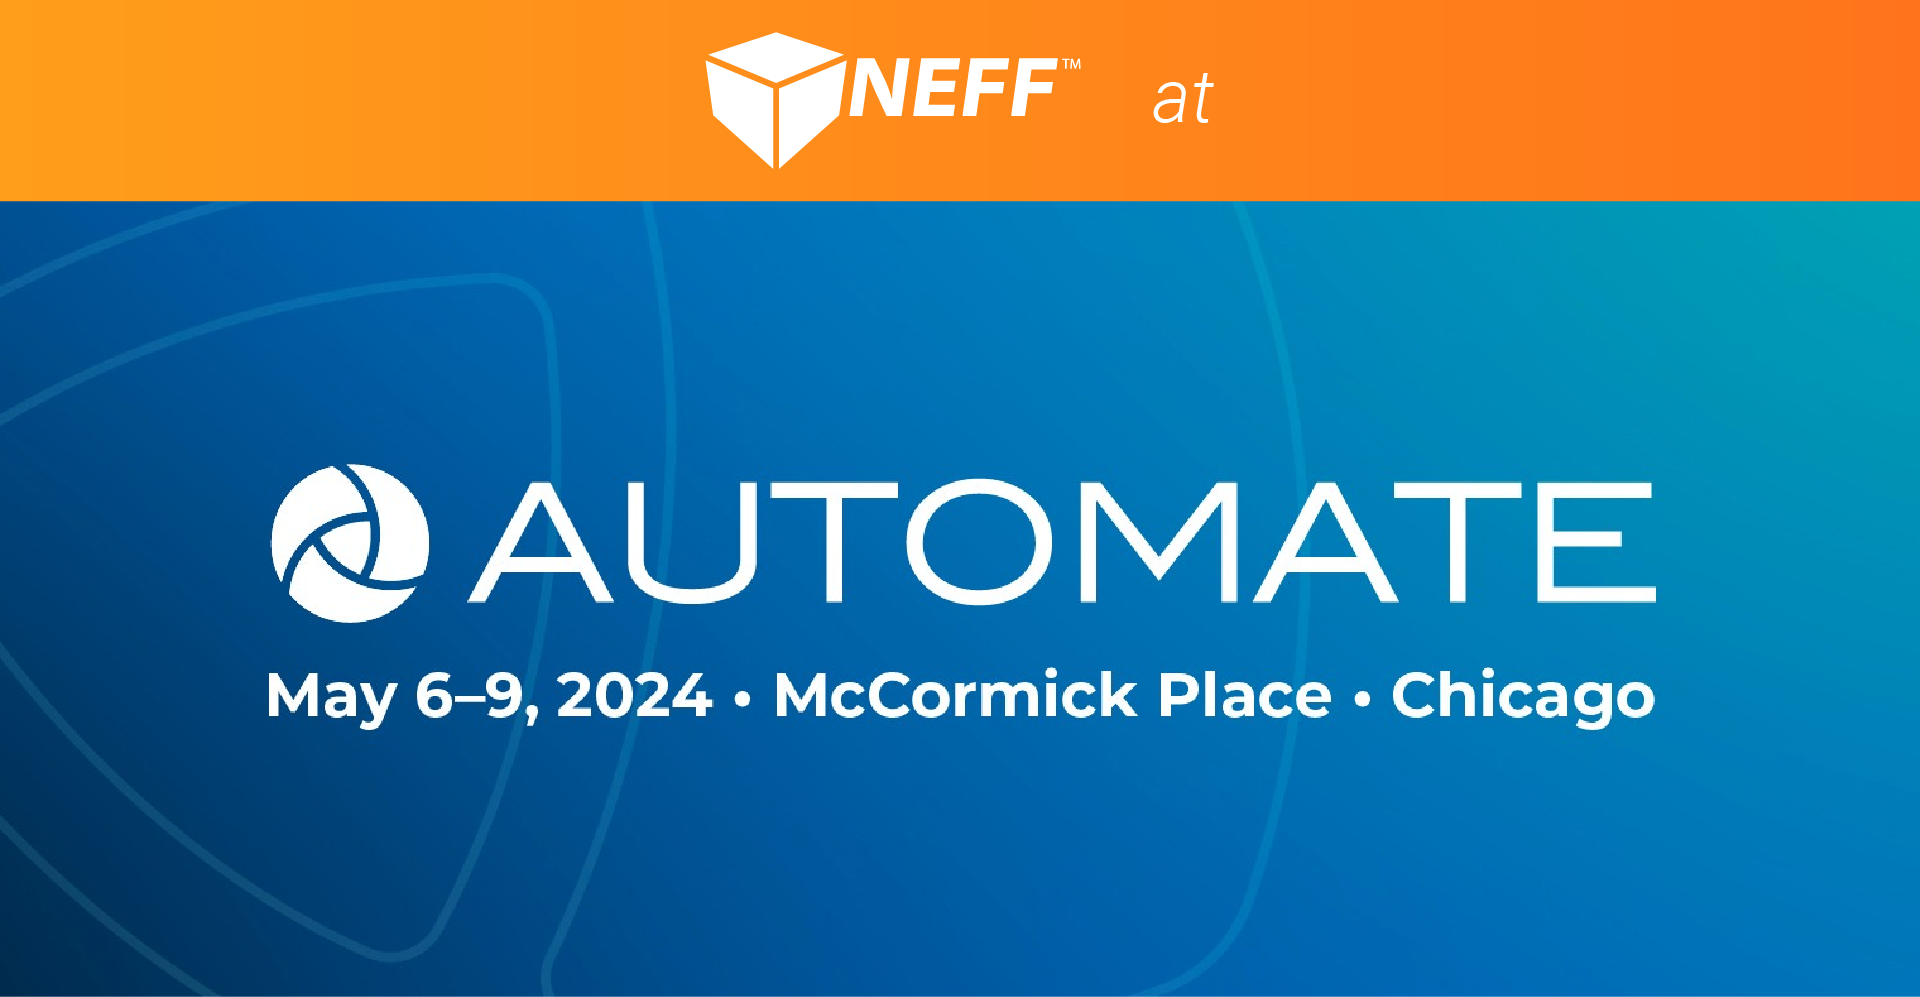 NEFF at Automate 2024